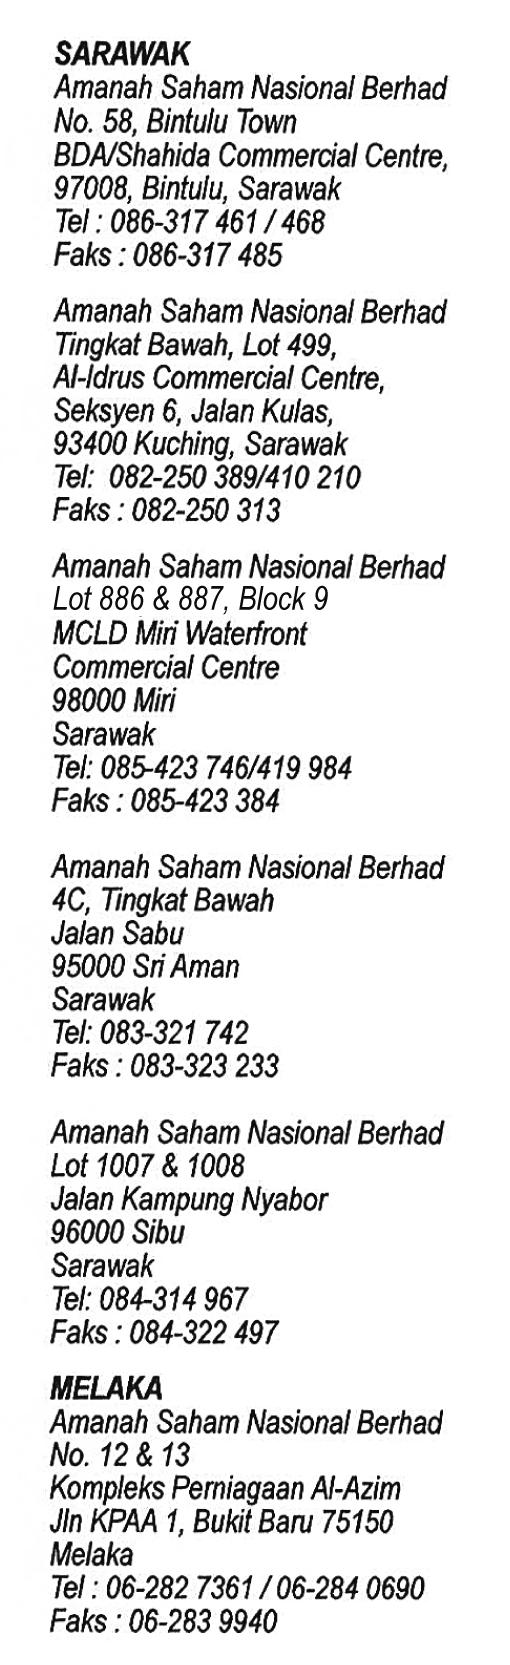 Datu, Sabah Tel: 089-863680/681/672/673 Faks: 089-863675